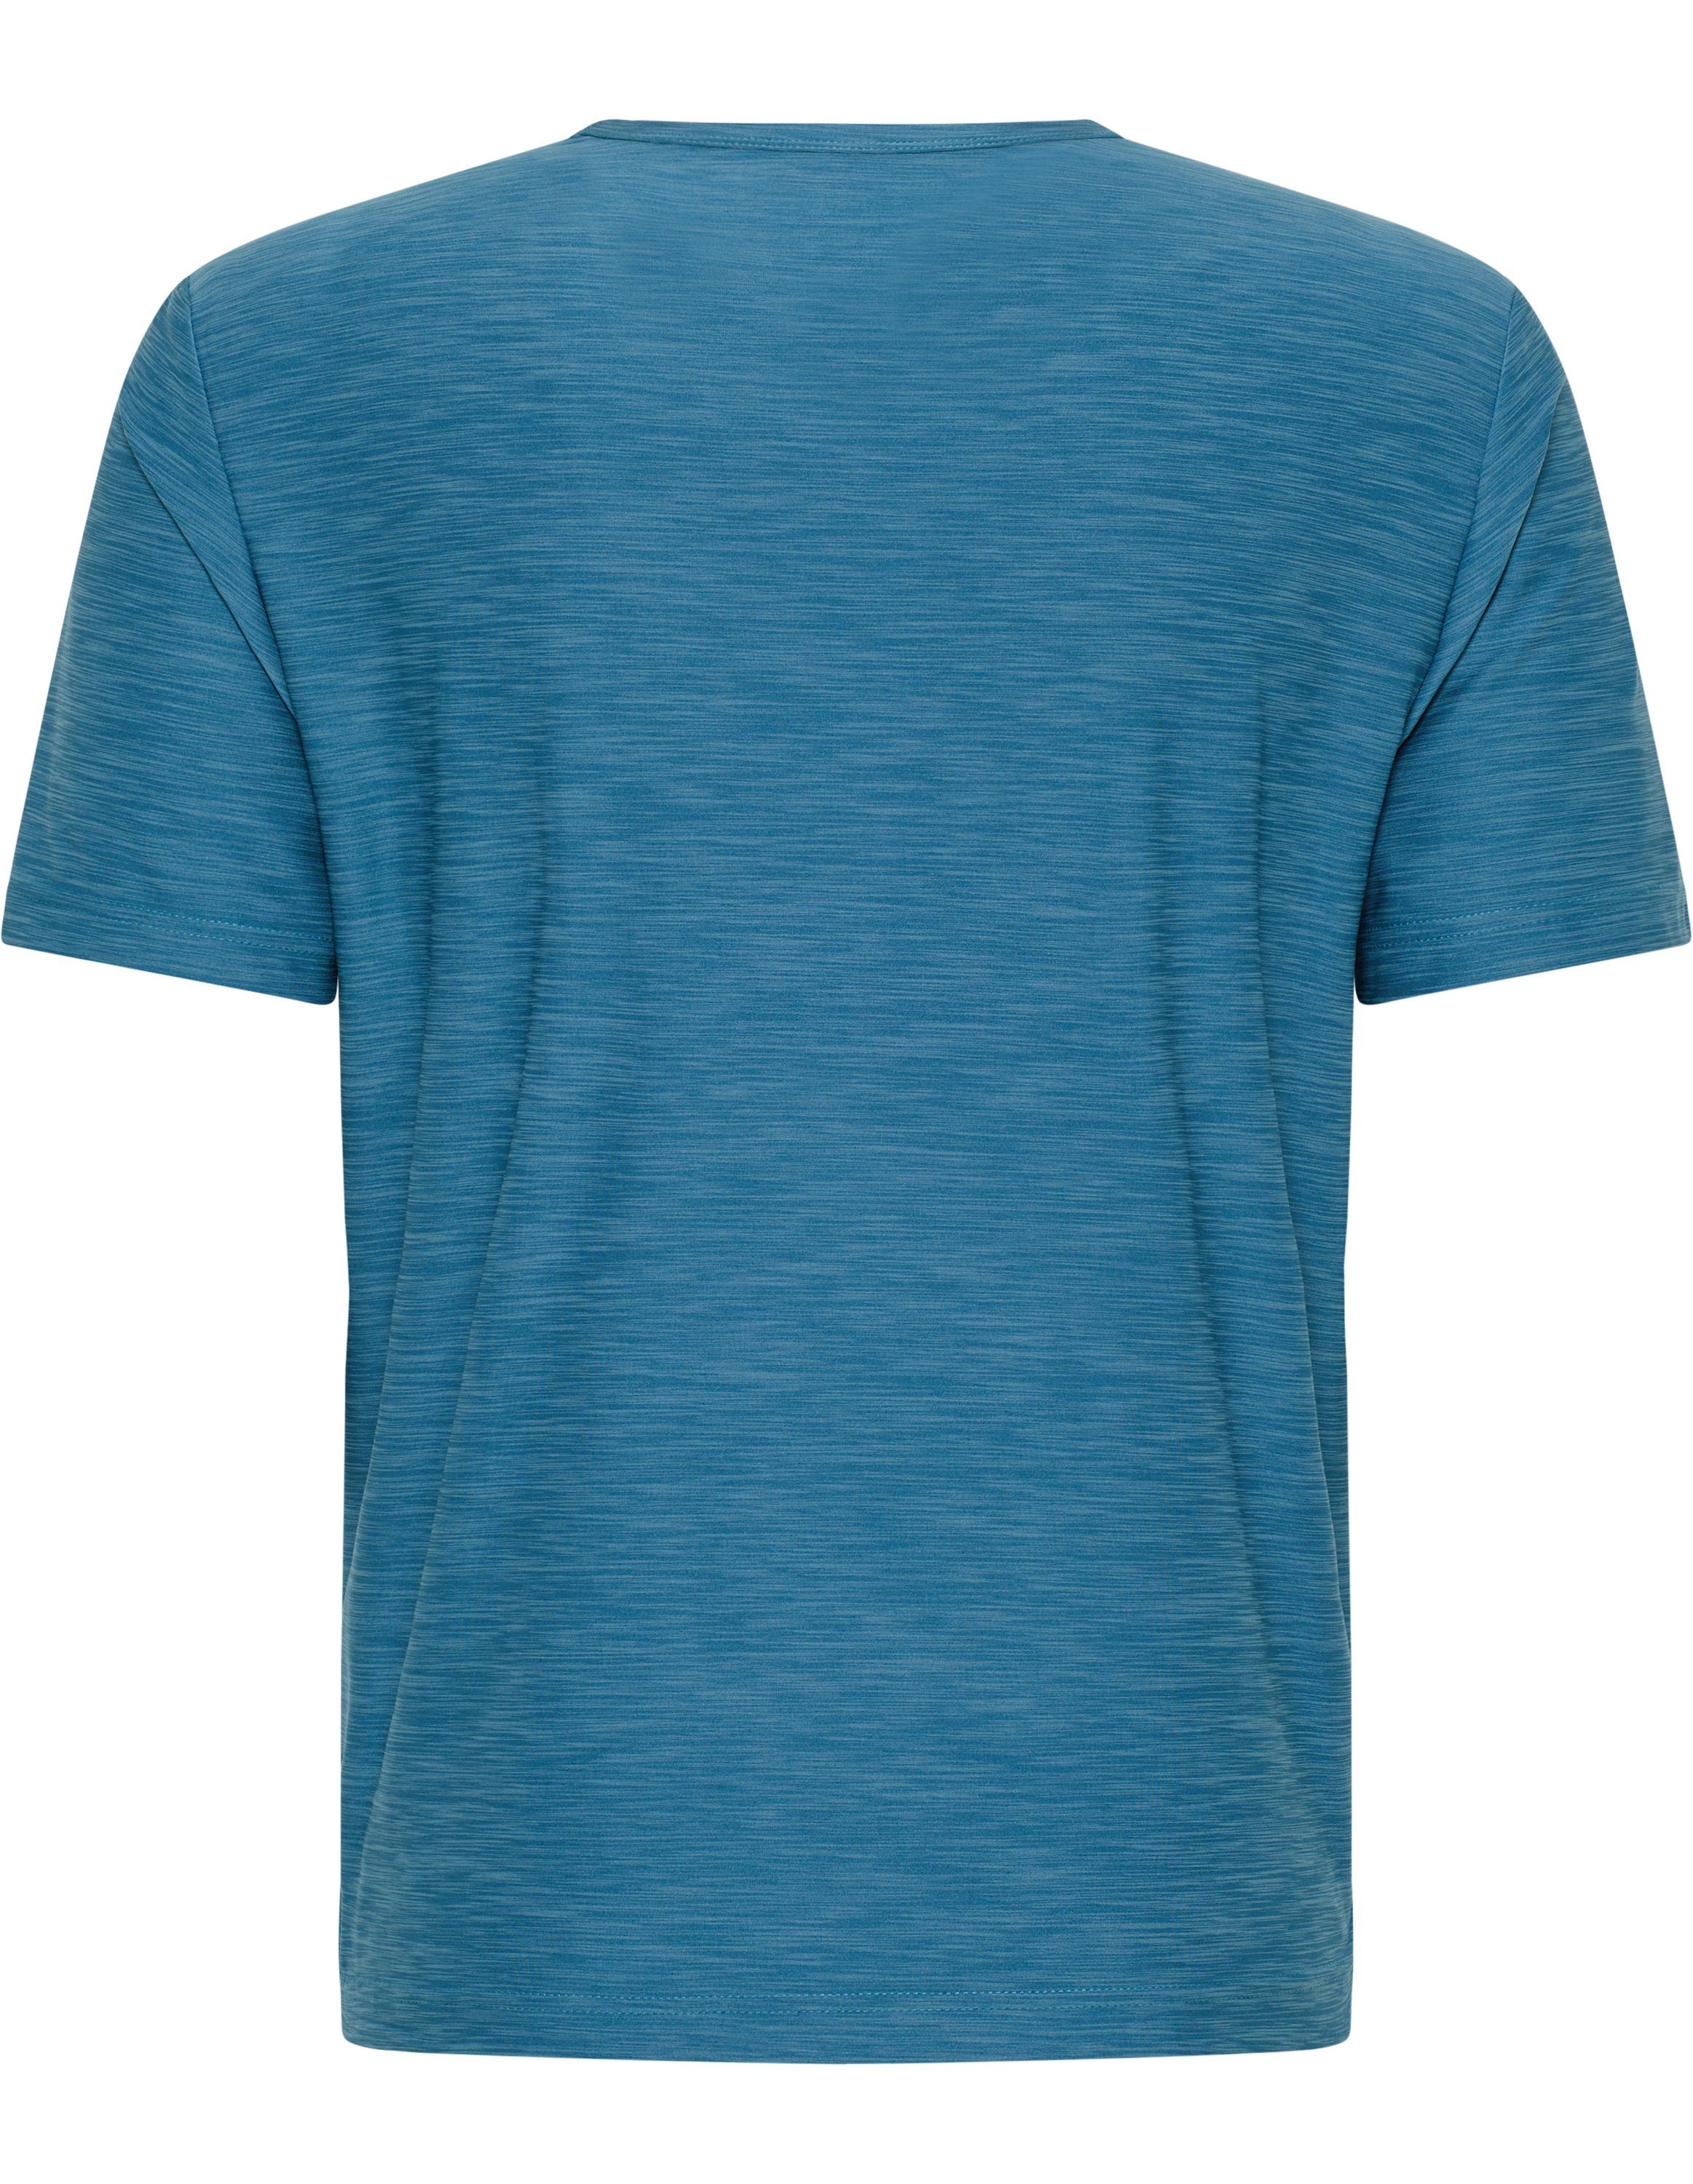 Sportswear T-Shirt metallic melange blue T-Shirt VITUS Joy